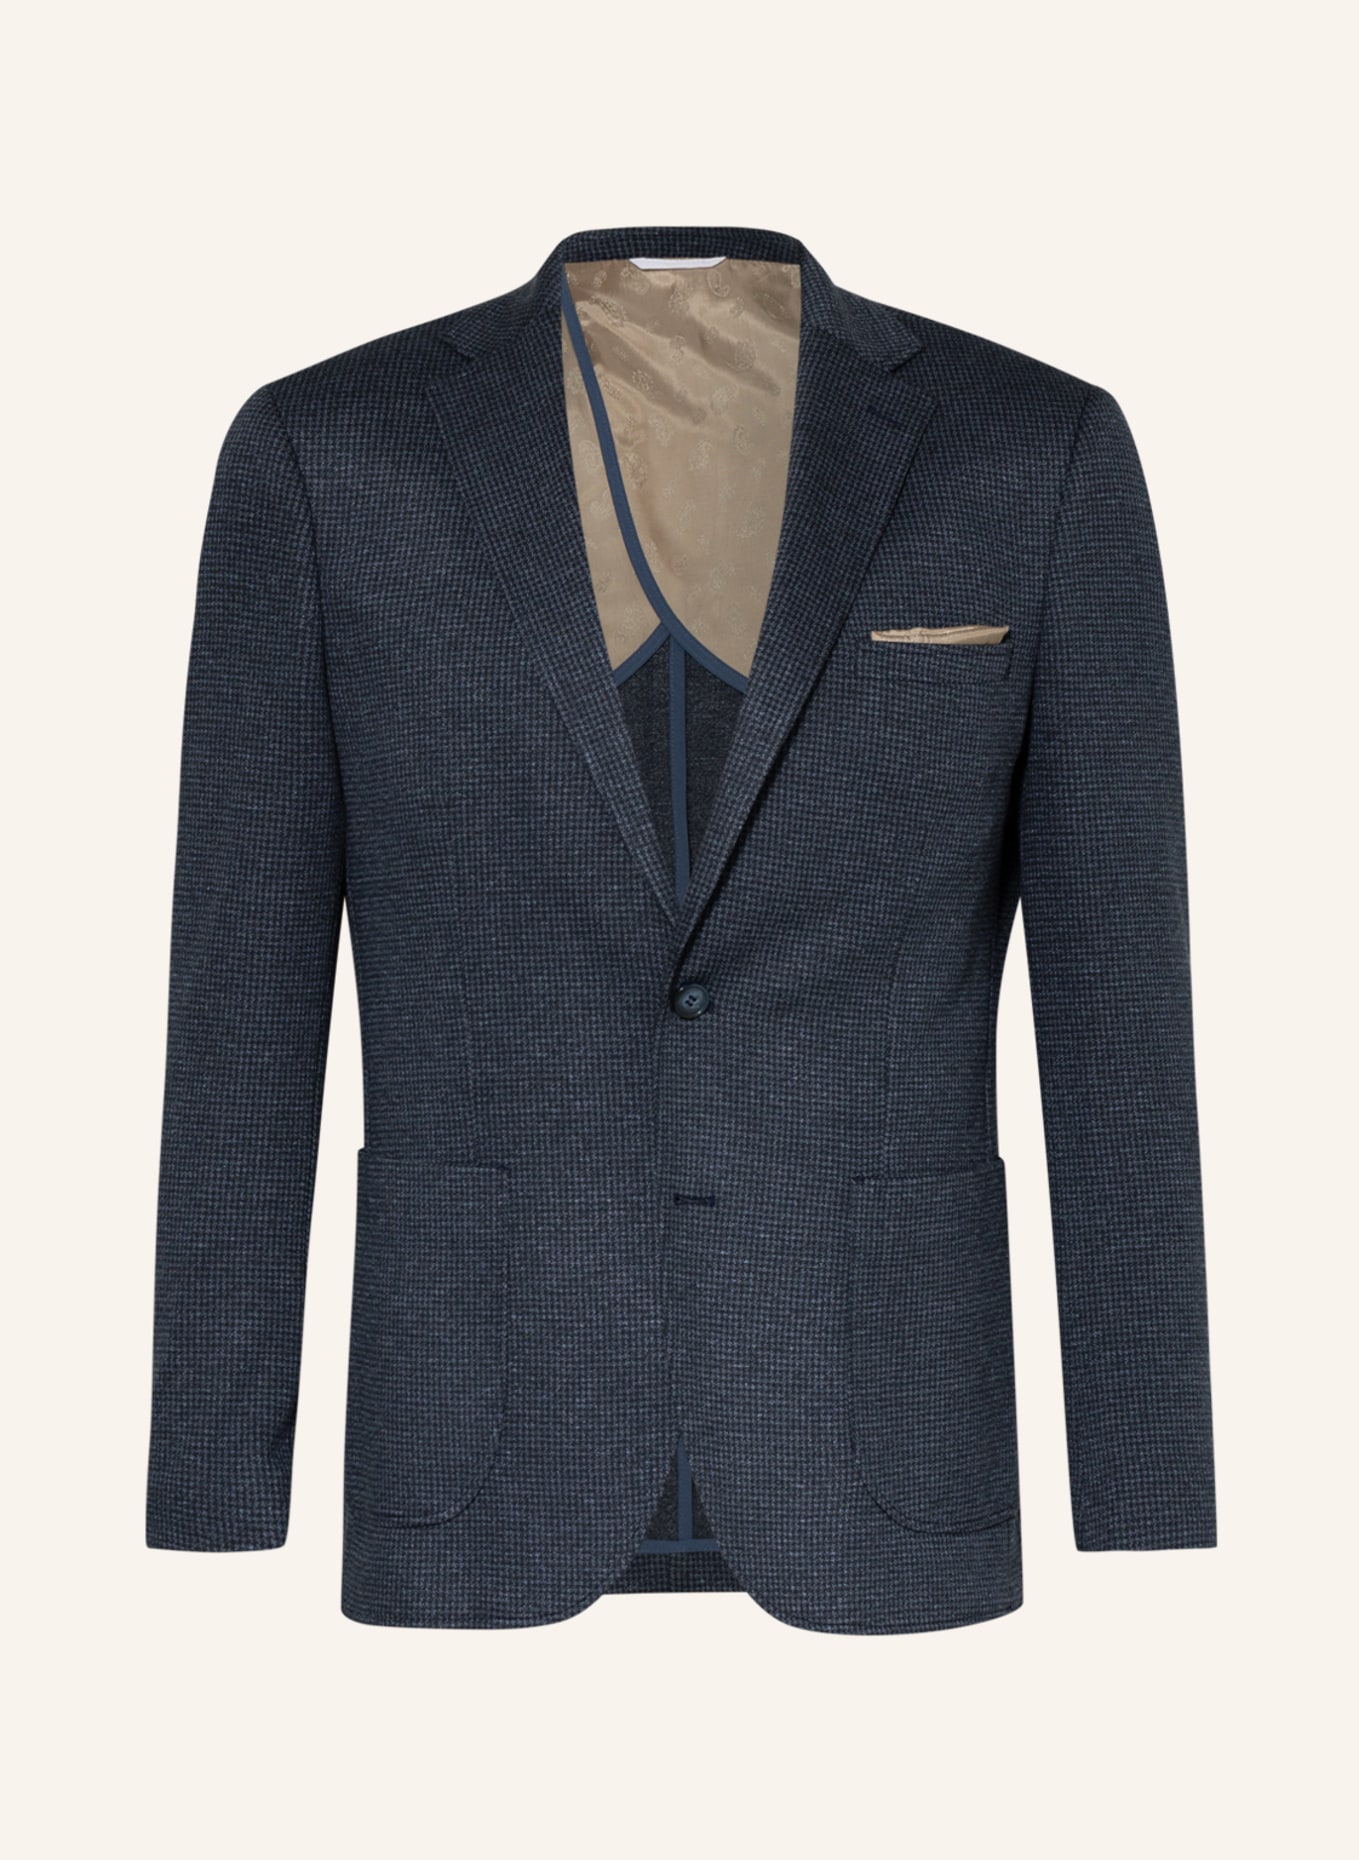 PAUL Suit jacket slim fit, Color: 660 navy (Image 1)